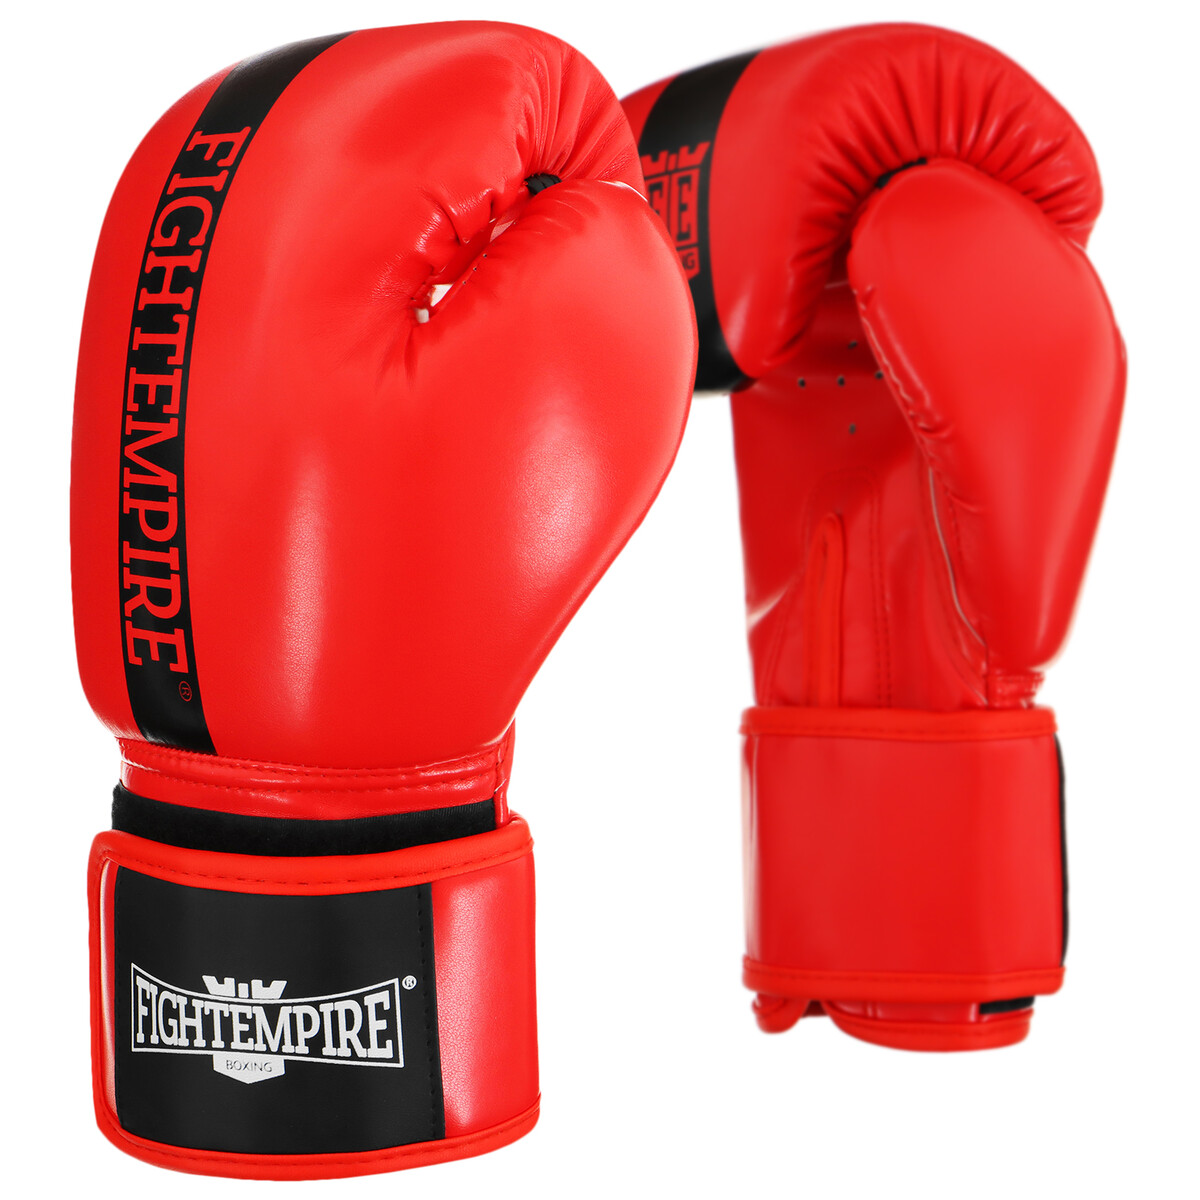 Перчатки боксерские fight empire, 10 унций, цвет красный перчатки боксерские everlast elite prostyle p00001243 12oz к з красный